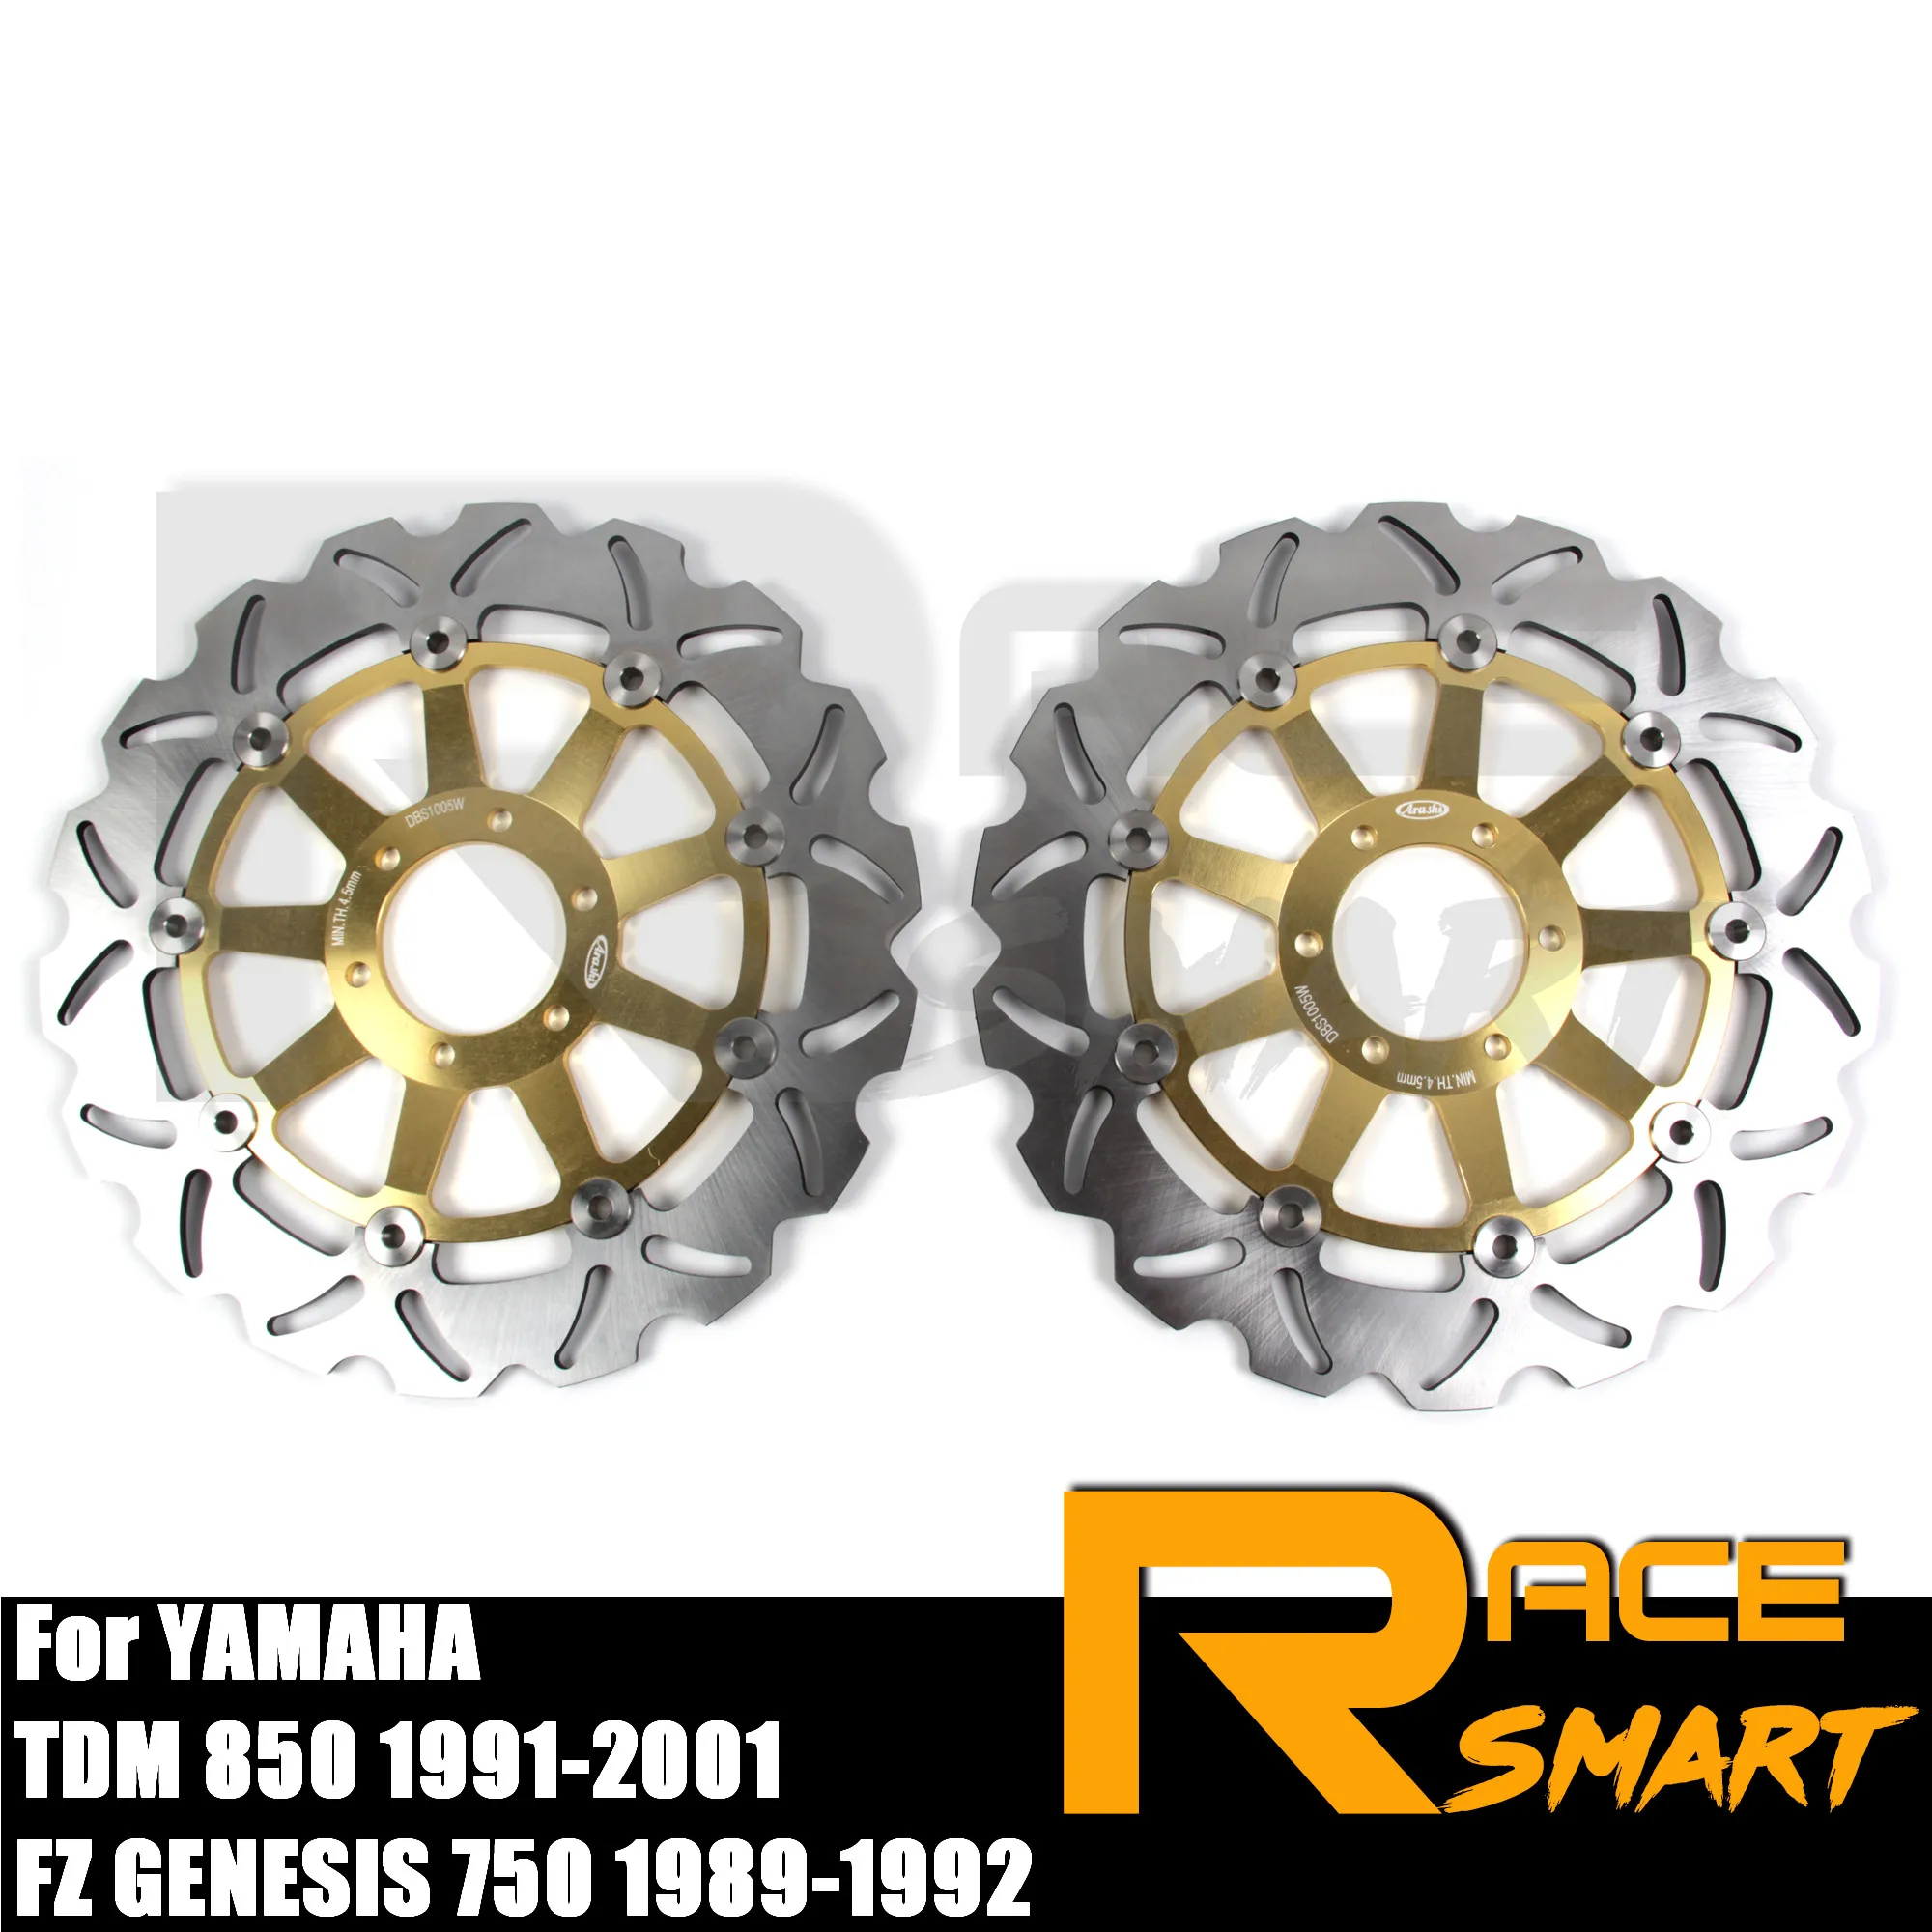 

Передние тормозные диски с ЧПУ для мотоциклов YAMAHA FZ GENESIS 750 1989-1992 диски роторы TDM 850 1991-2001 1992 1993 1994 1995 1996